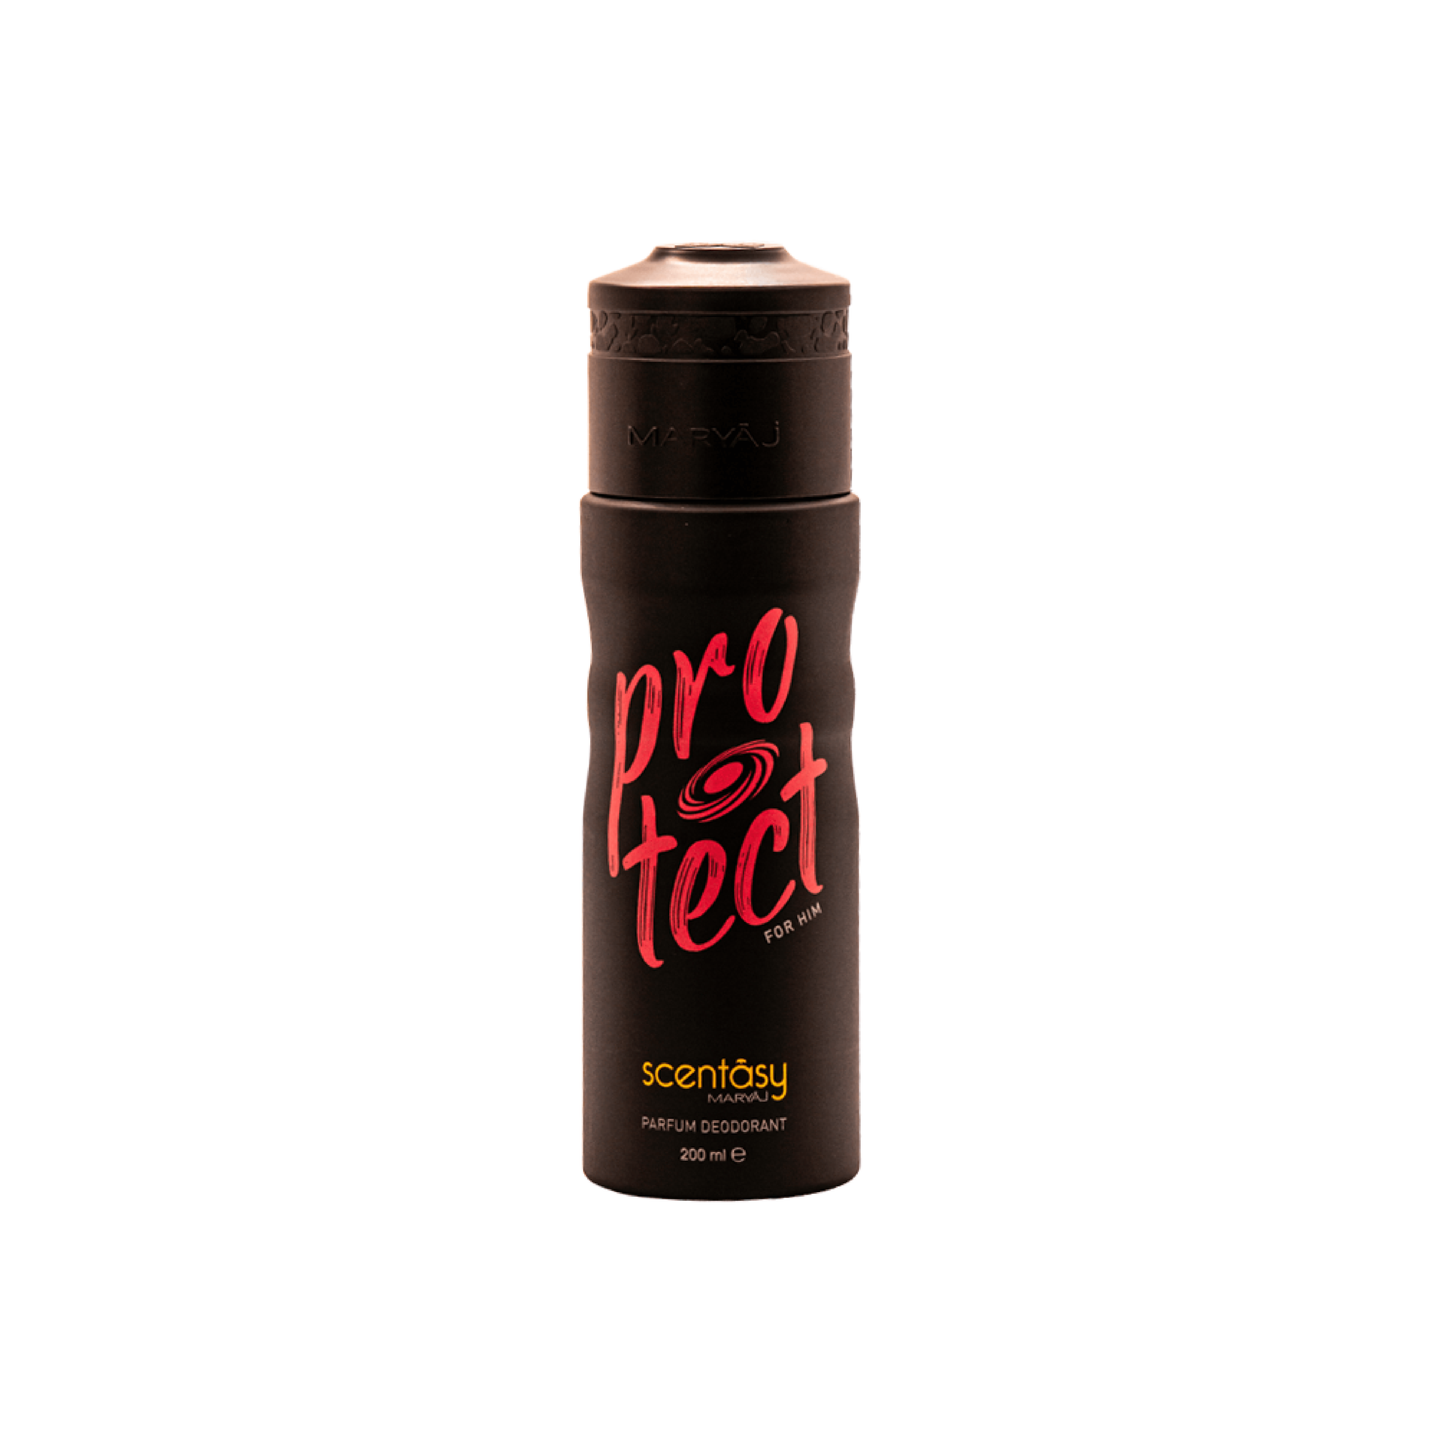 Scentasy PROTECT Perfume Deodorant Body Spray For Men, 200 Ml